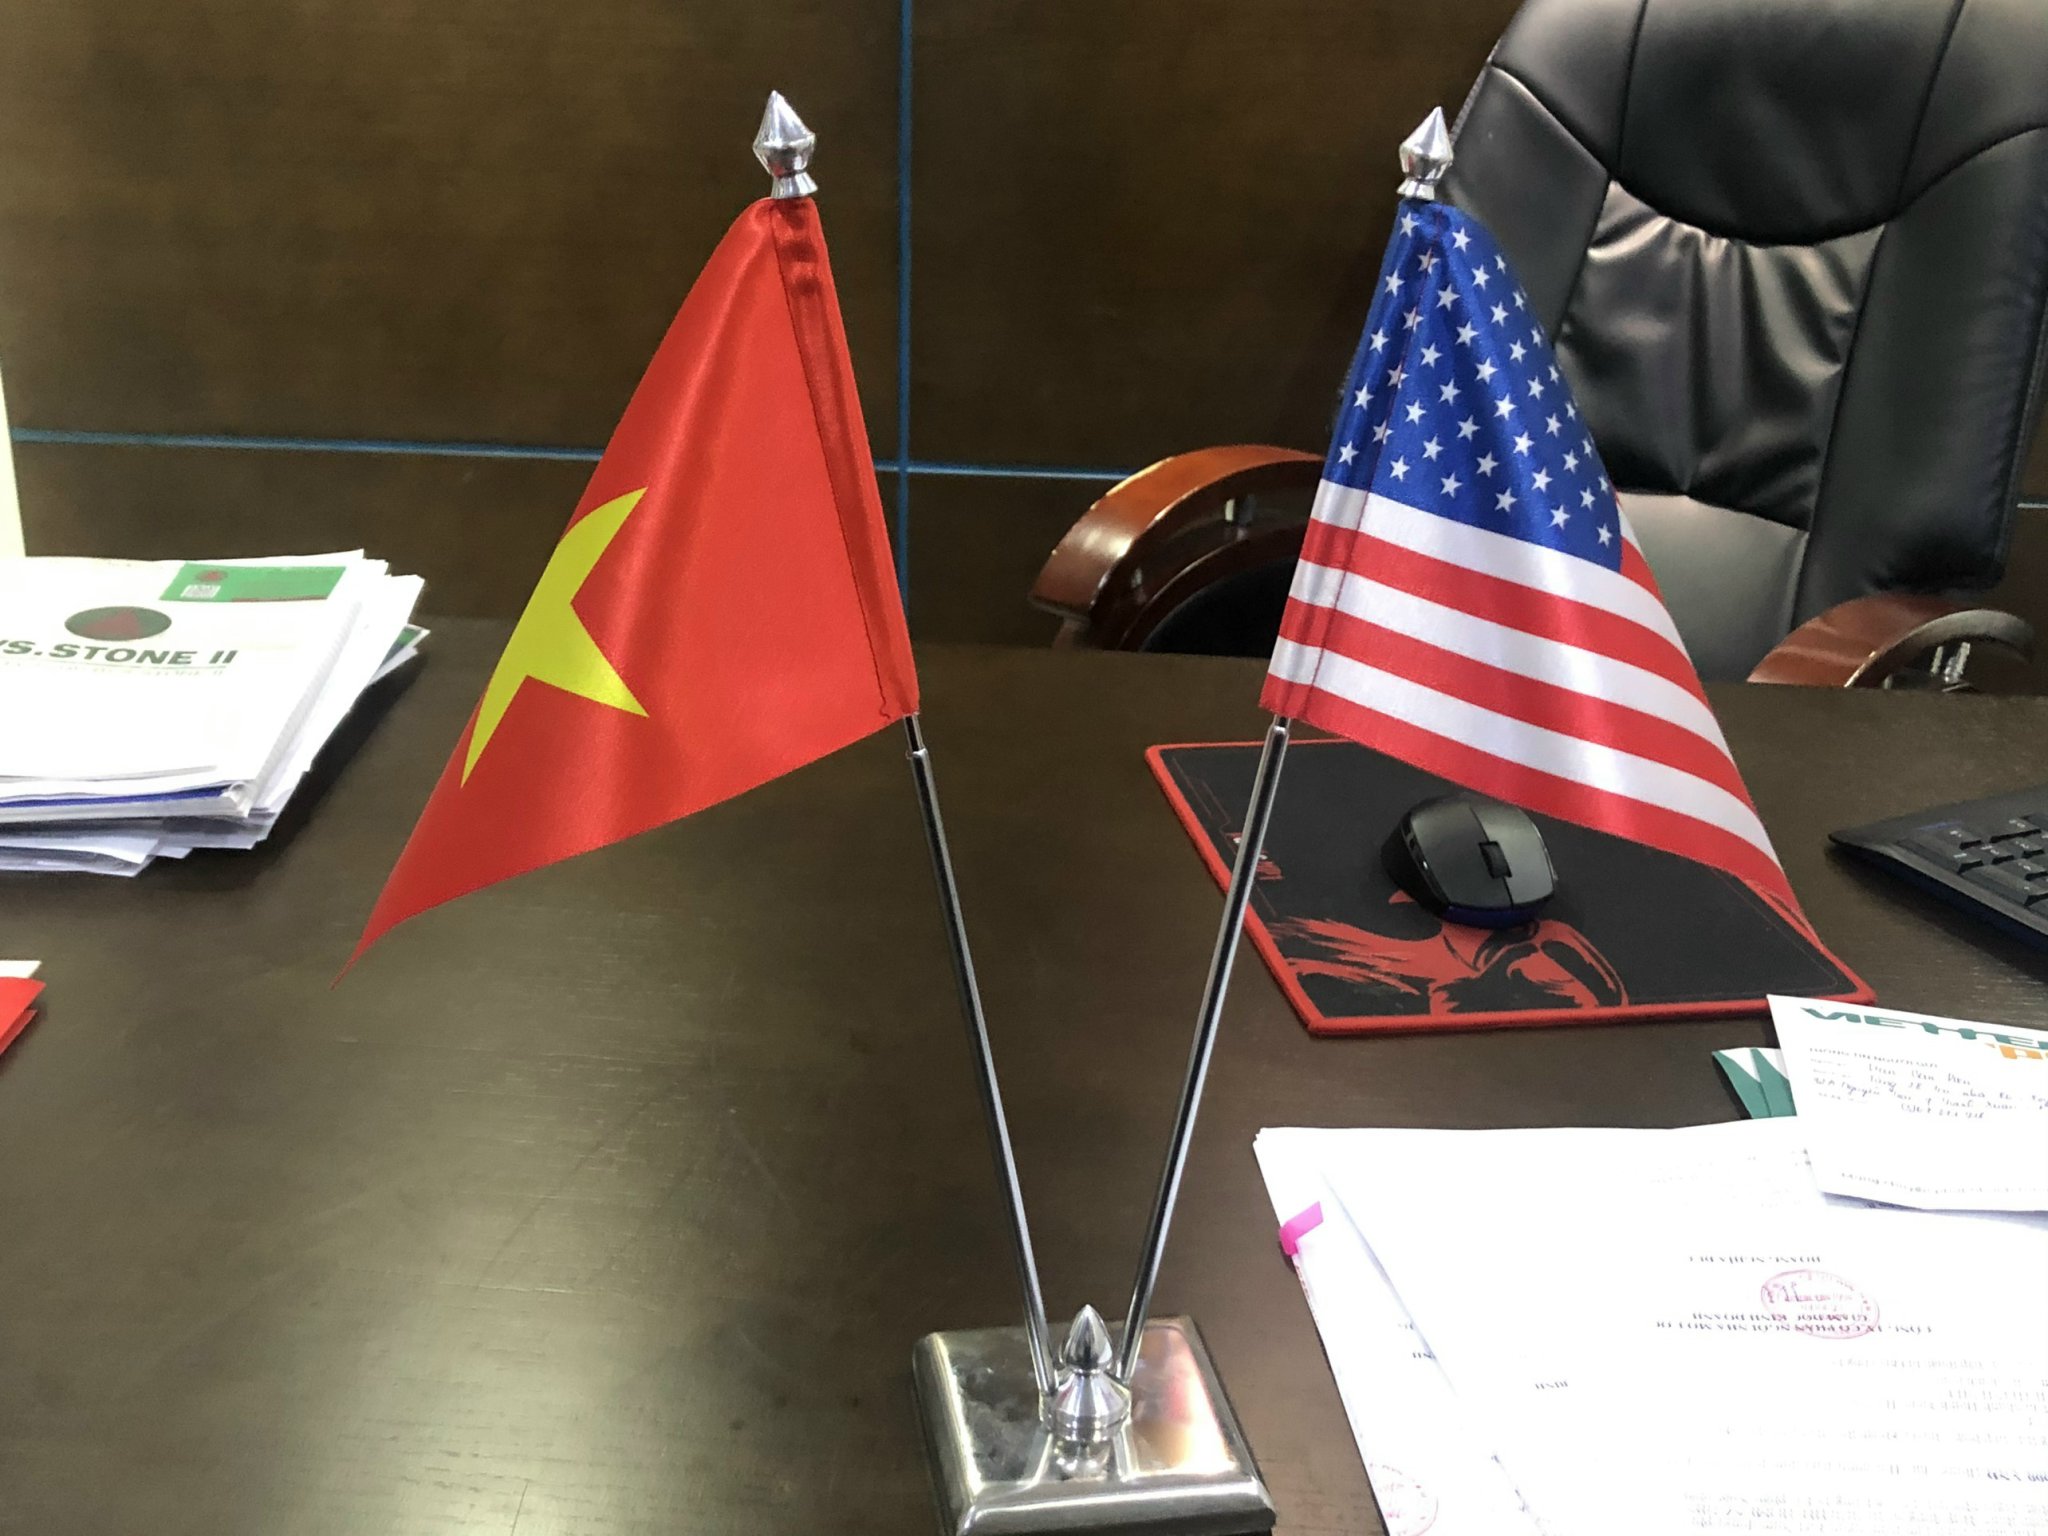 xưởng may cờ giá rẻ - Cờ Để Bàn Việt Nam, Mỹ